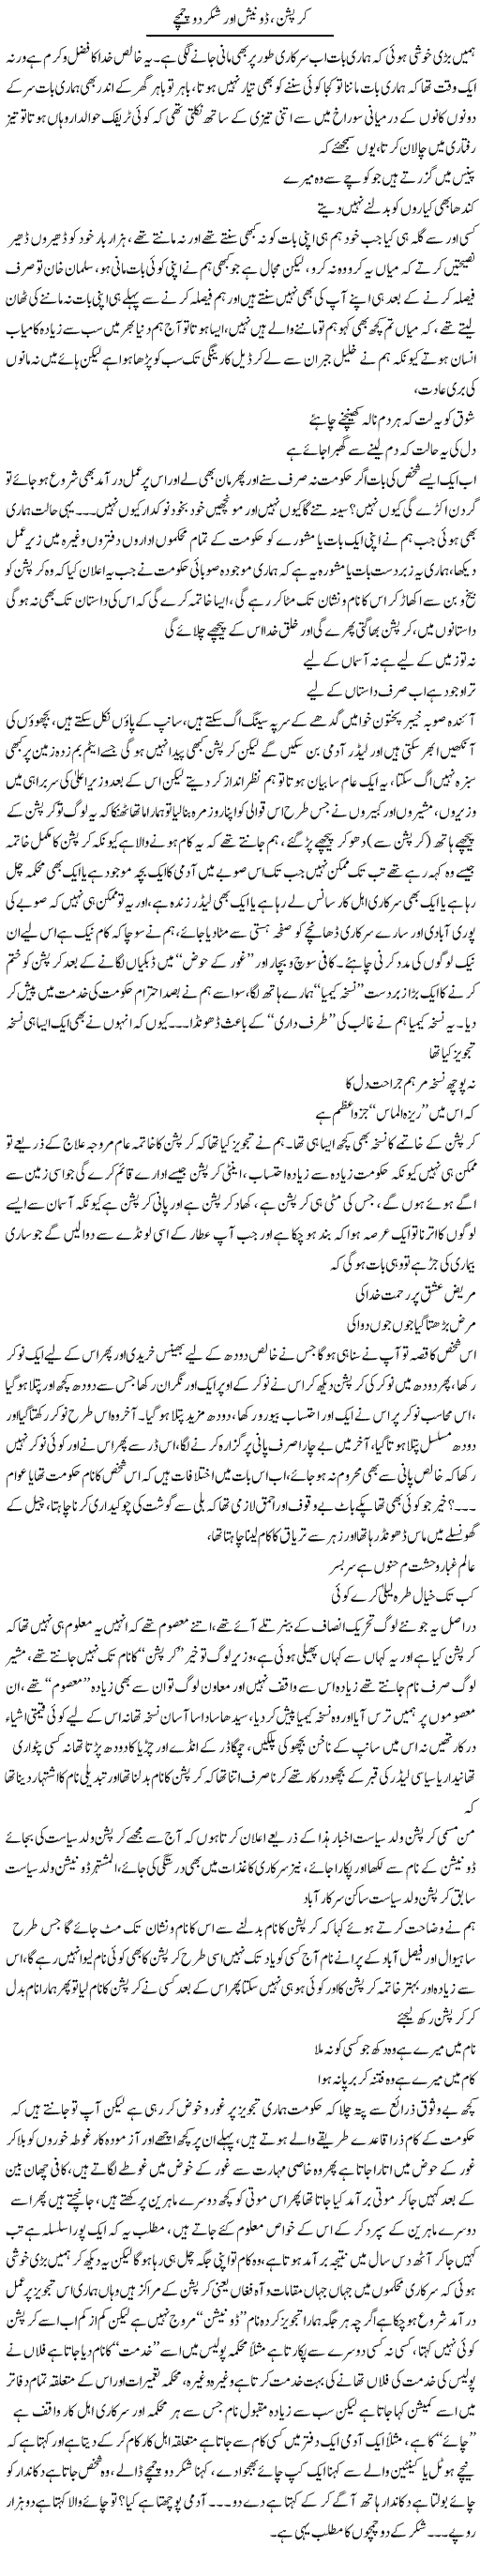 Curuption Donaish Aur Shakar Do Chamche | Saad Ullah Jan Barq | Daily Urdu Columns